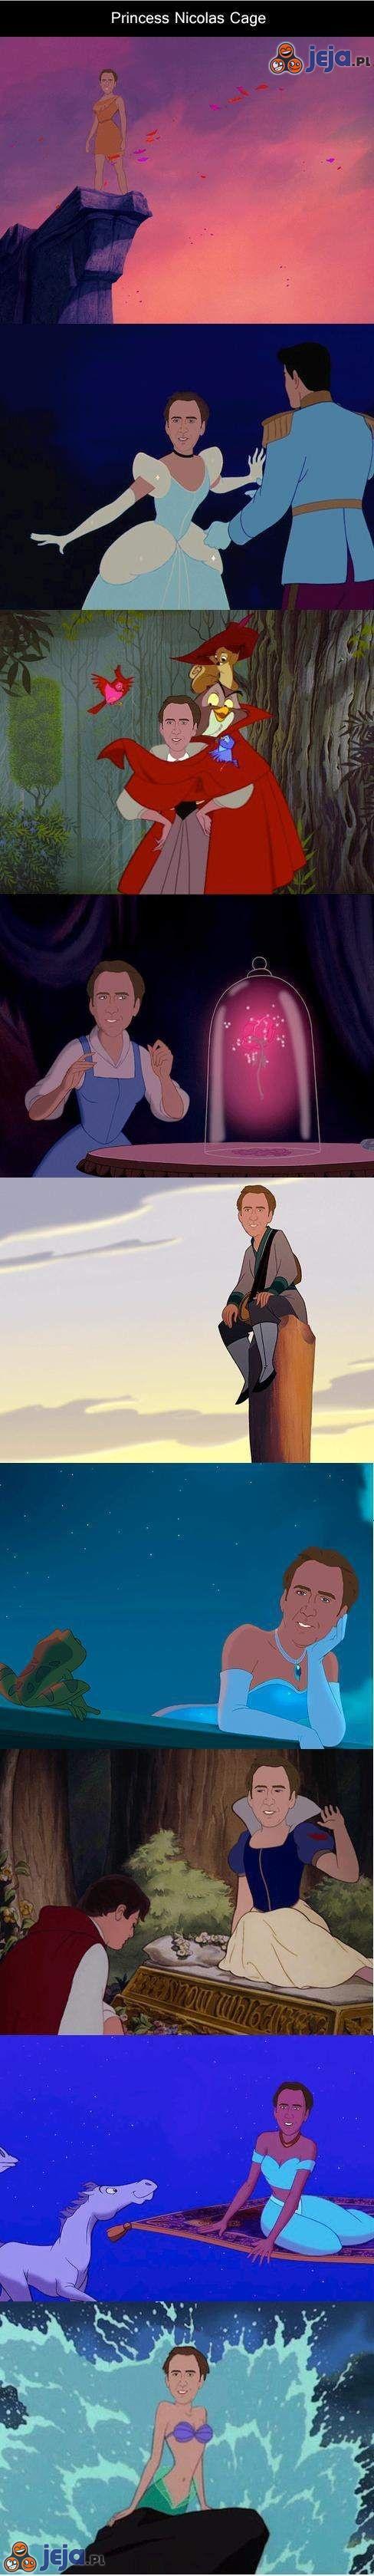 Nicolas Cage jako księżniczki Disney'a